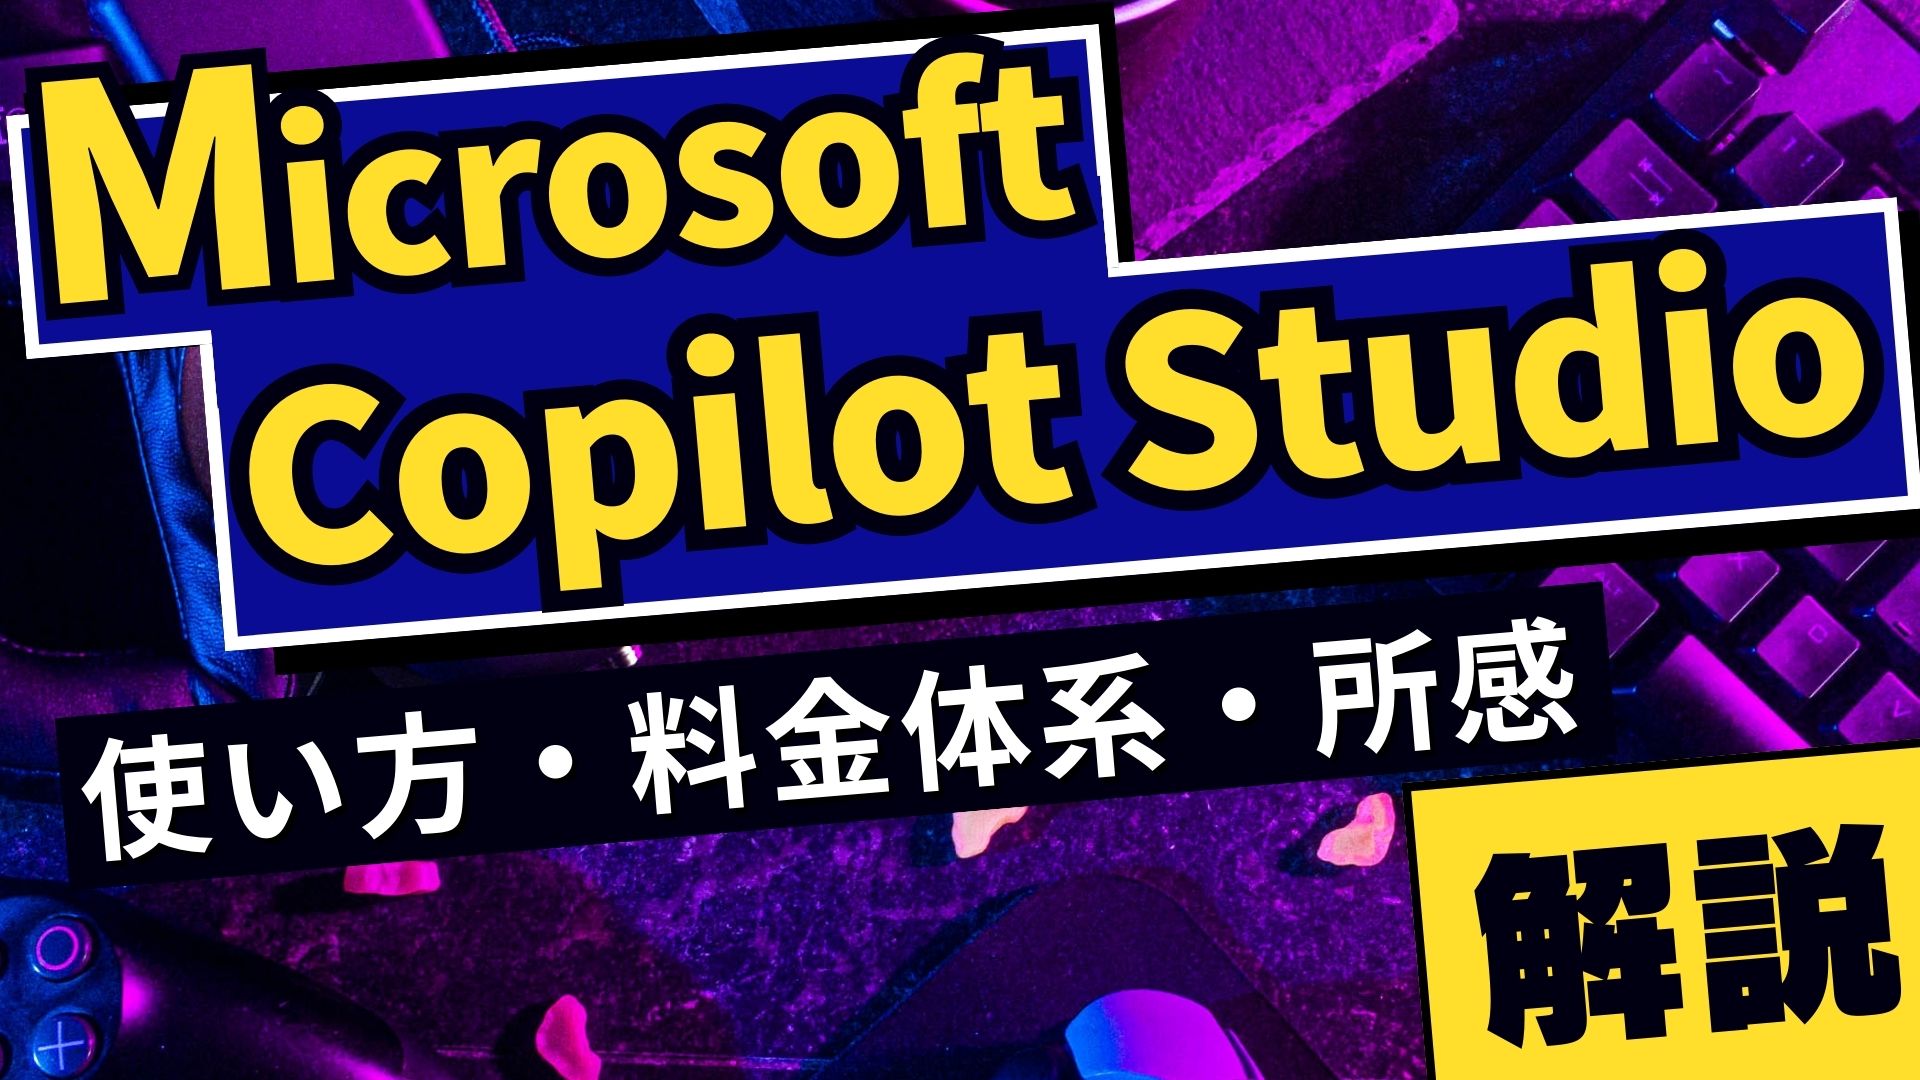 【Microsoft Copilot Studio】使い方や料金体系、実際に使ってみた所感を解説